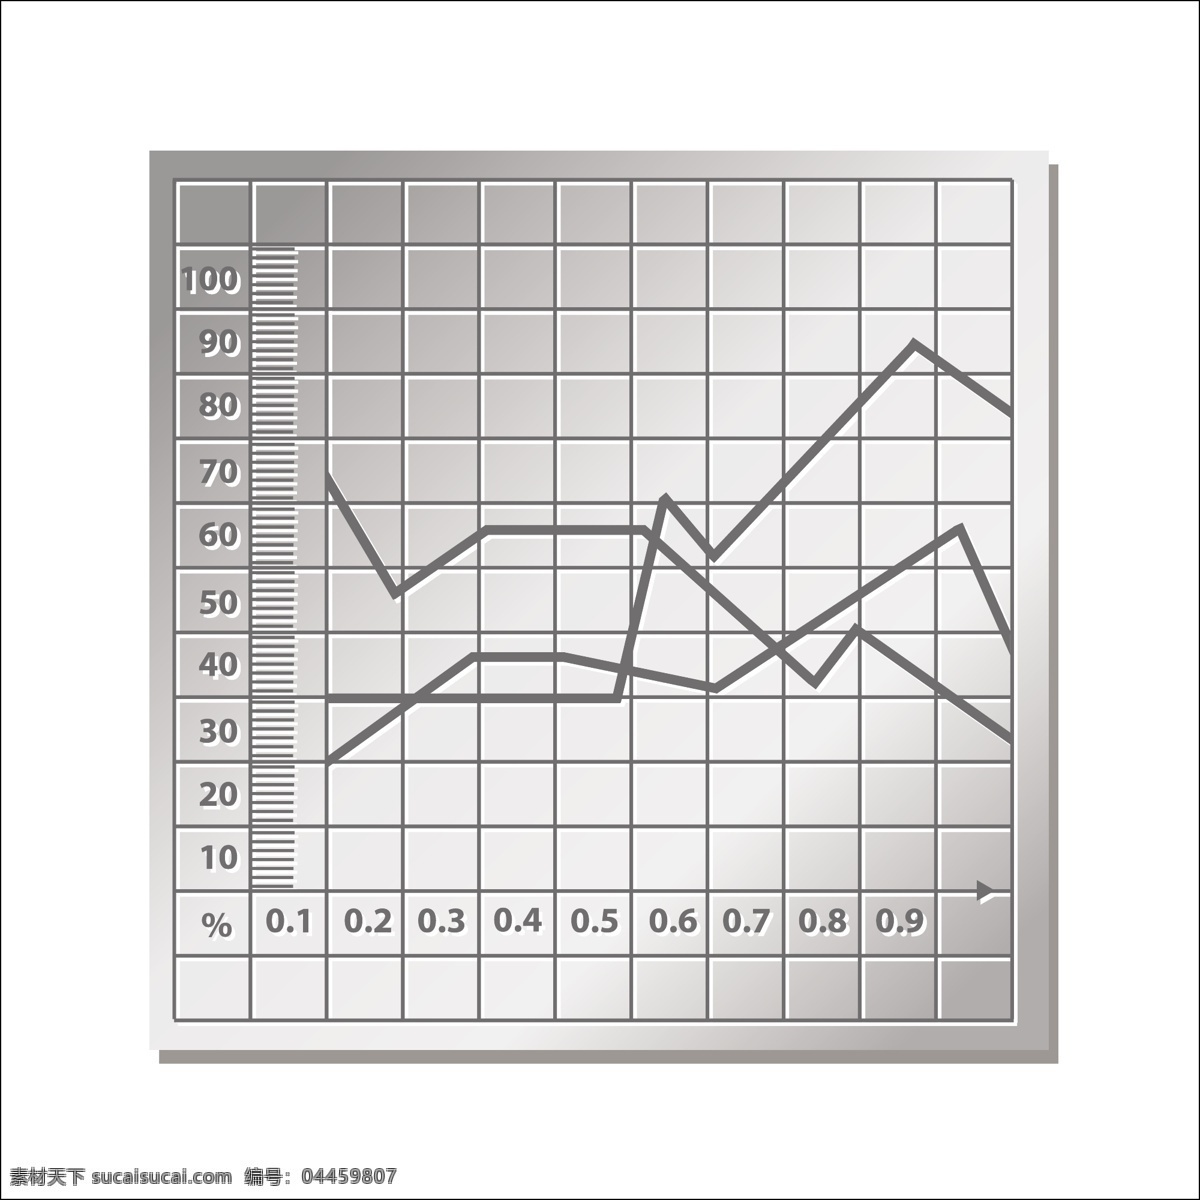 金属图 图表 业务模板 网 线 图形 符号 酒吧 金融 图 网站模板 数据 信息 增长 报告 商业信息图表 白色